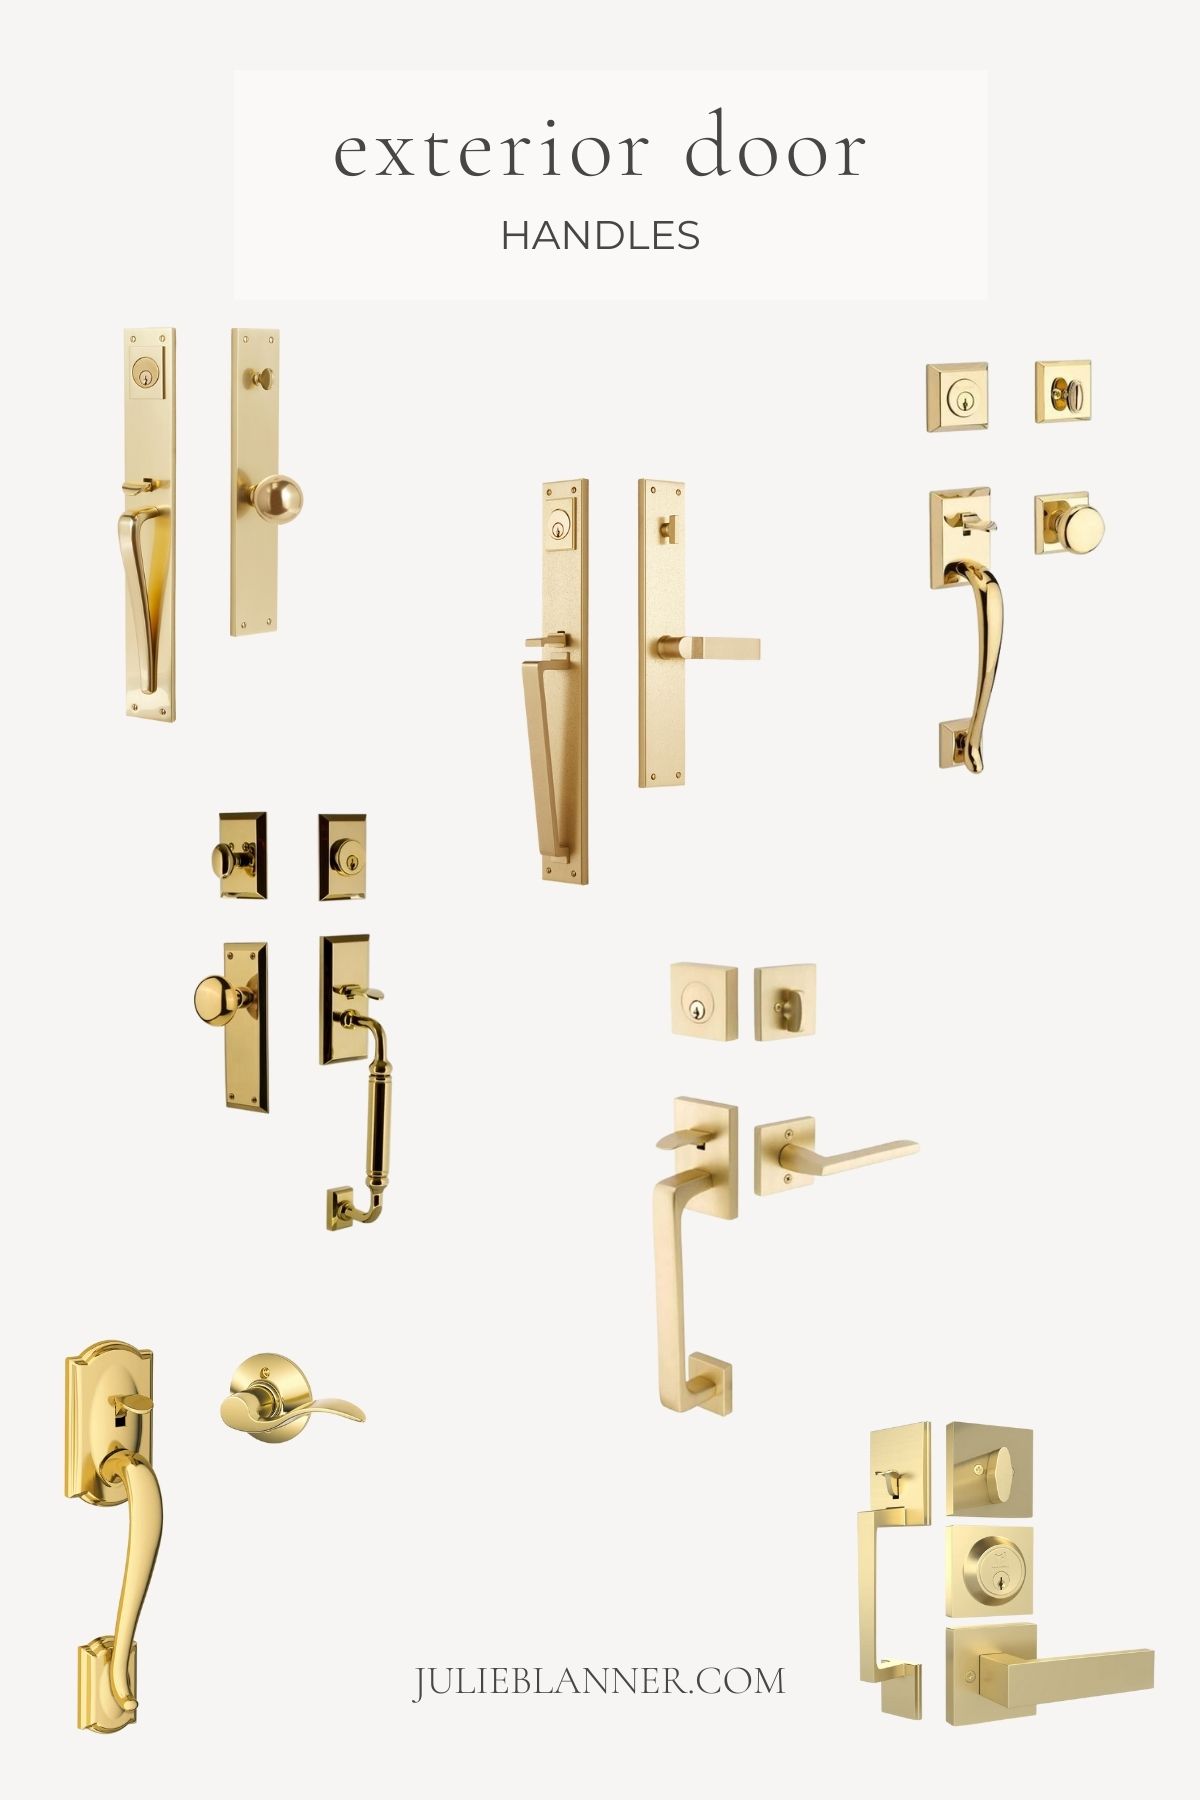 A graphic titled "exterior door handles" with images of brass exterior door handles